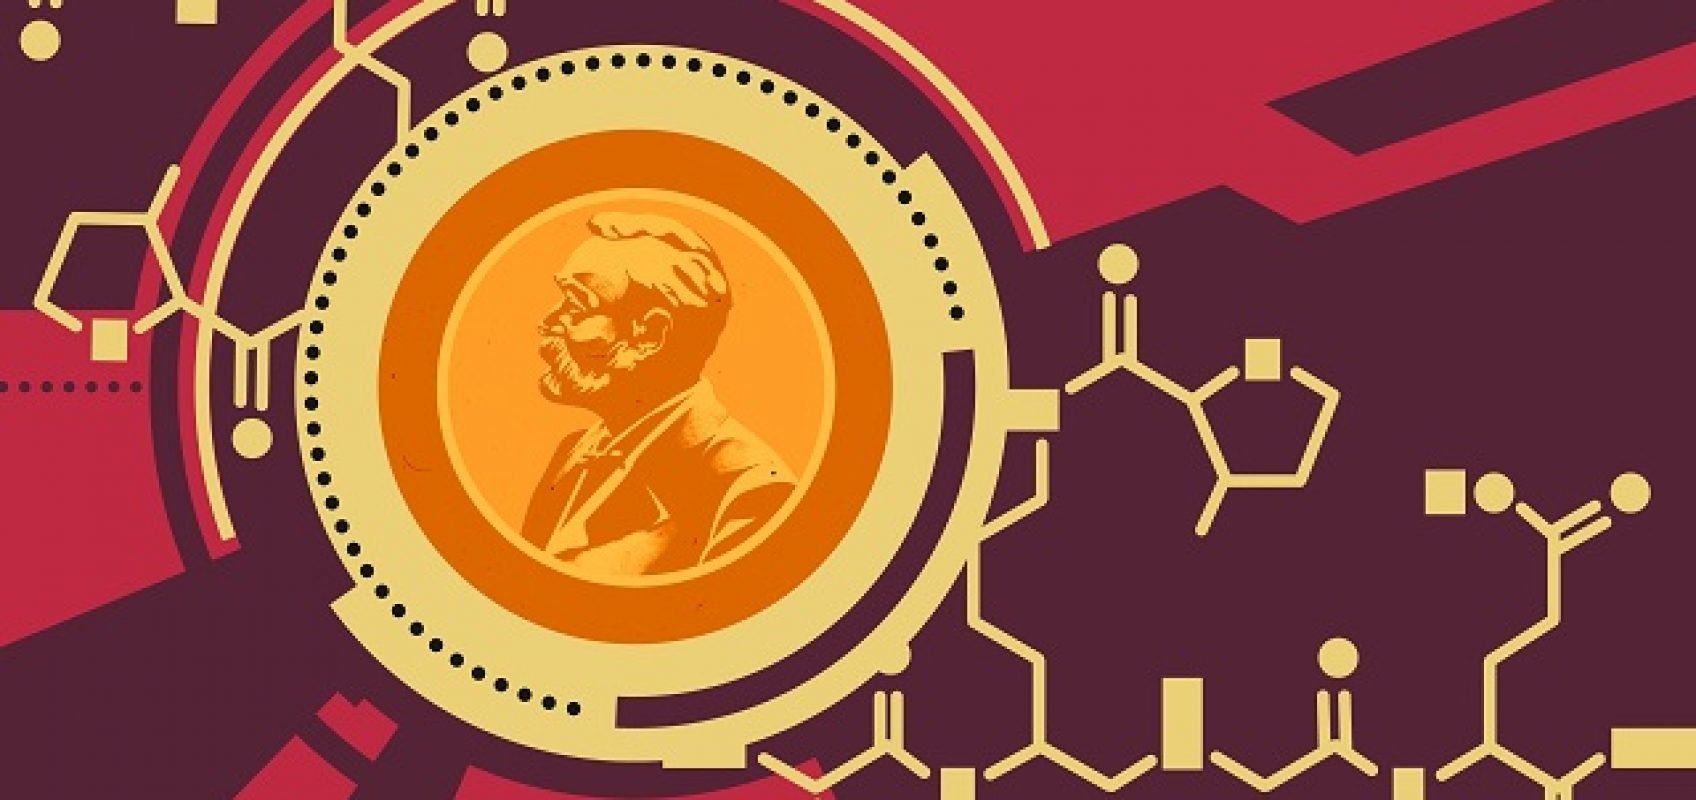 Нобелевская премия по химии досталась ученым за развитие асимметрического органокатализа